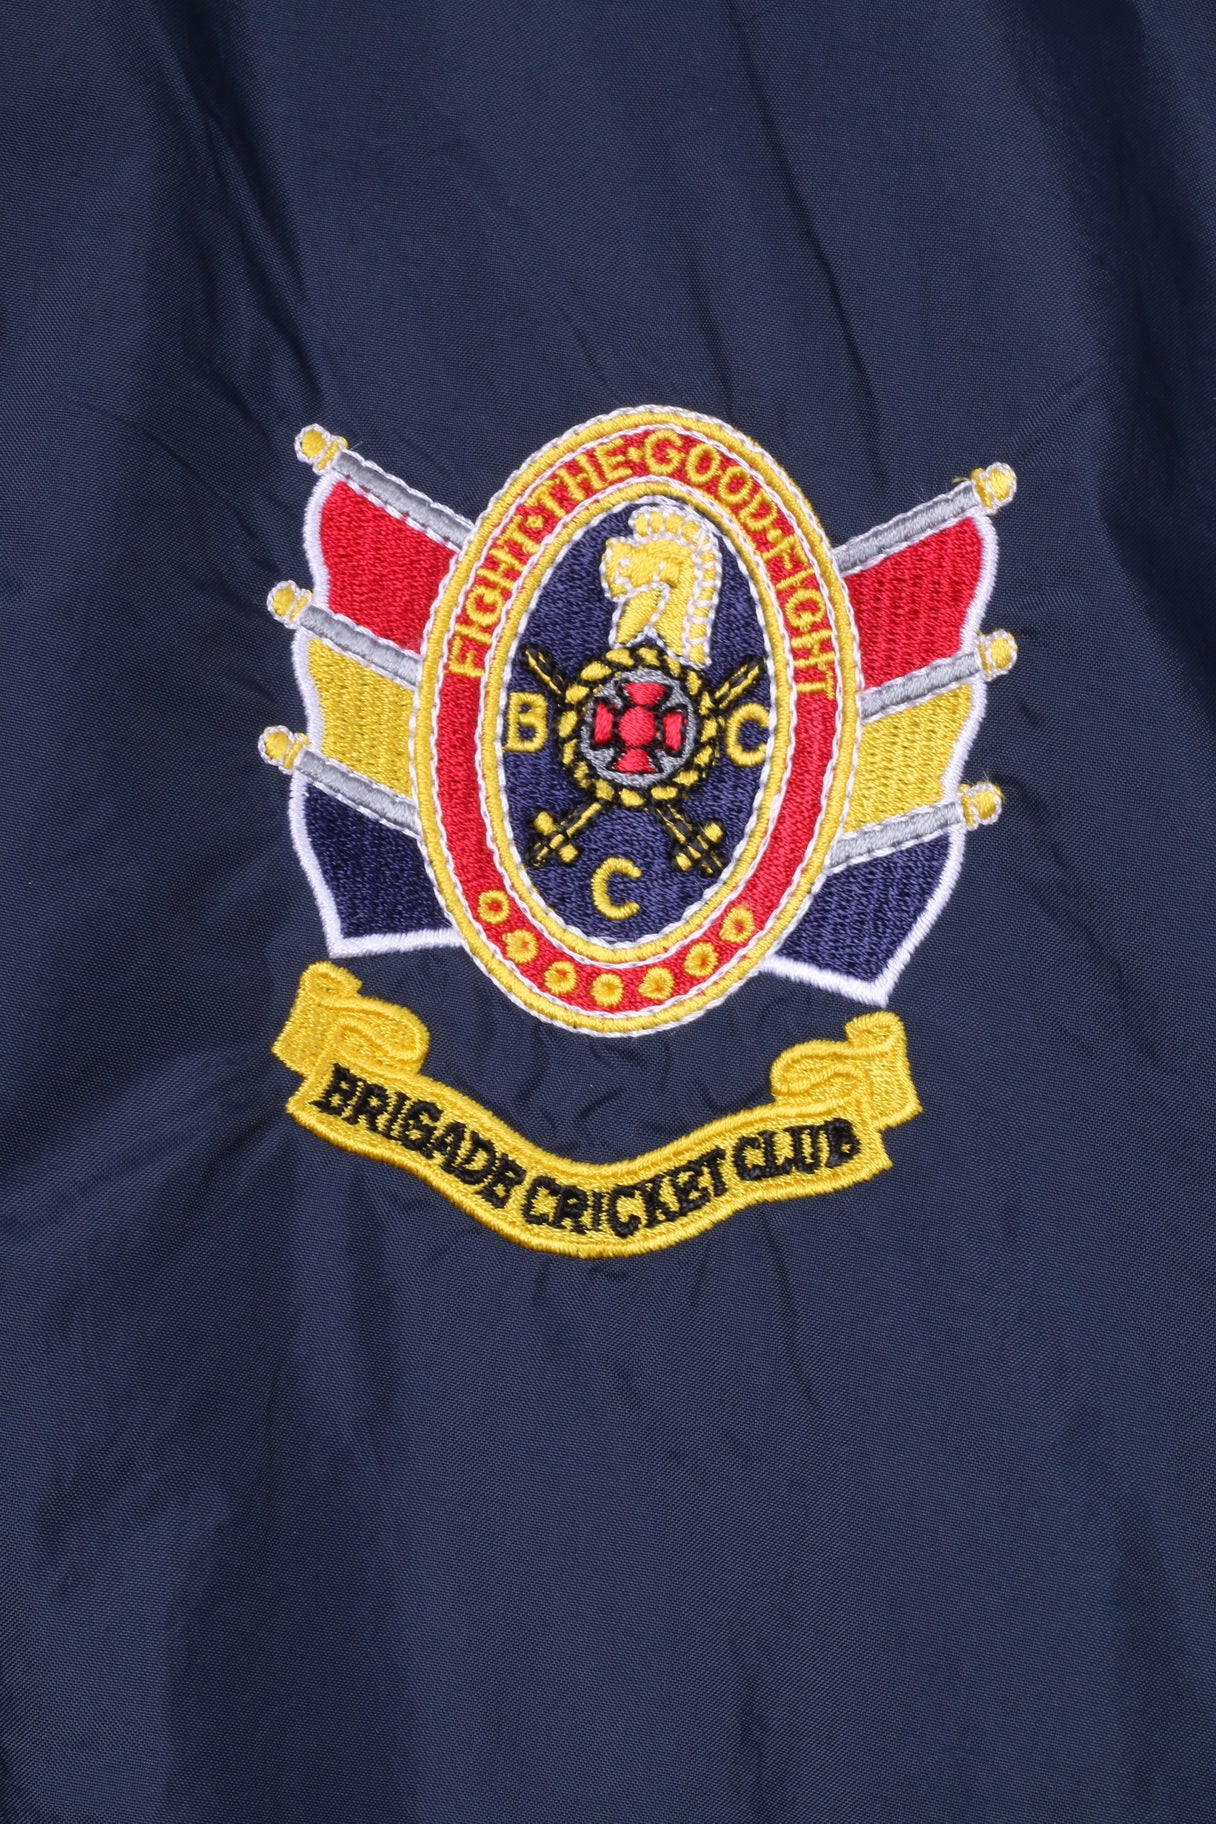 Giacca Game Gear per ragazzi di 13-14 anni, cappuccio nascosto in nylon blu navy Brigade Cricket Club